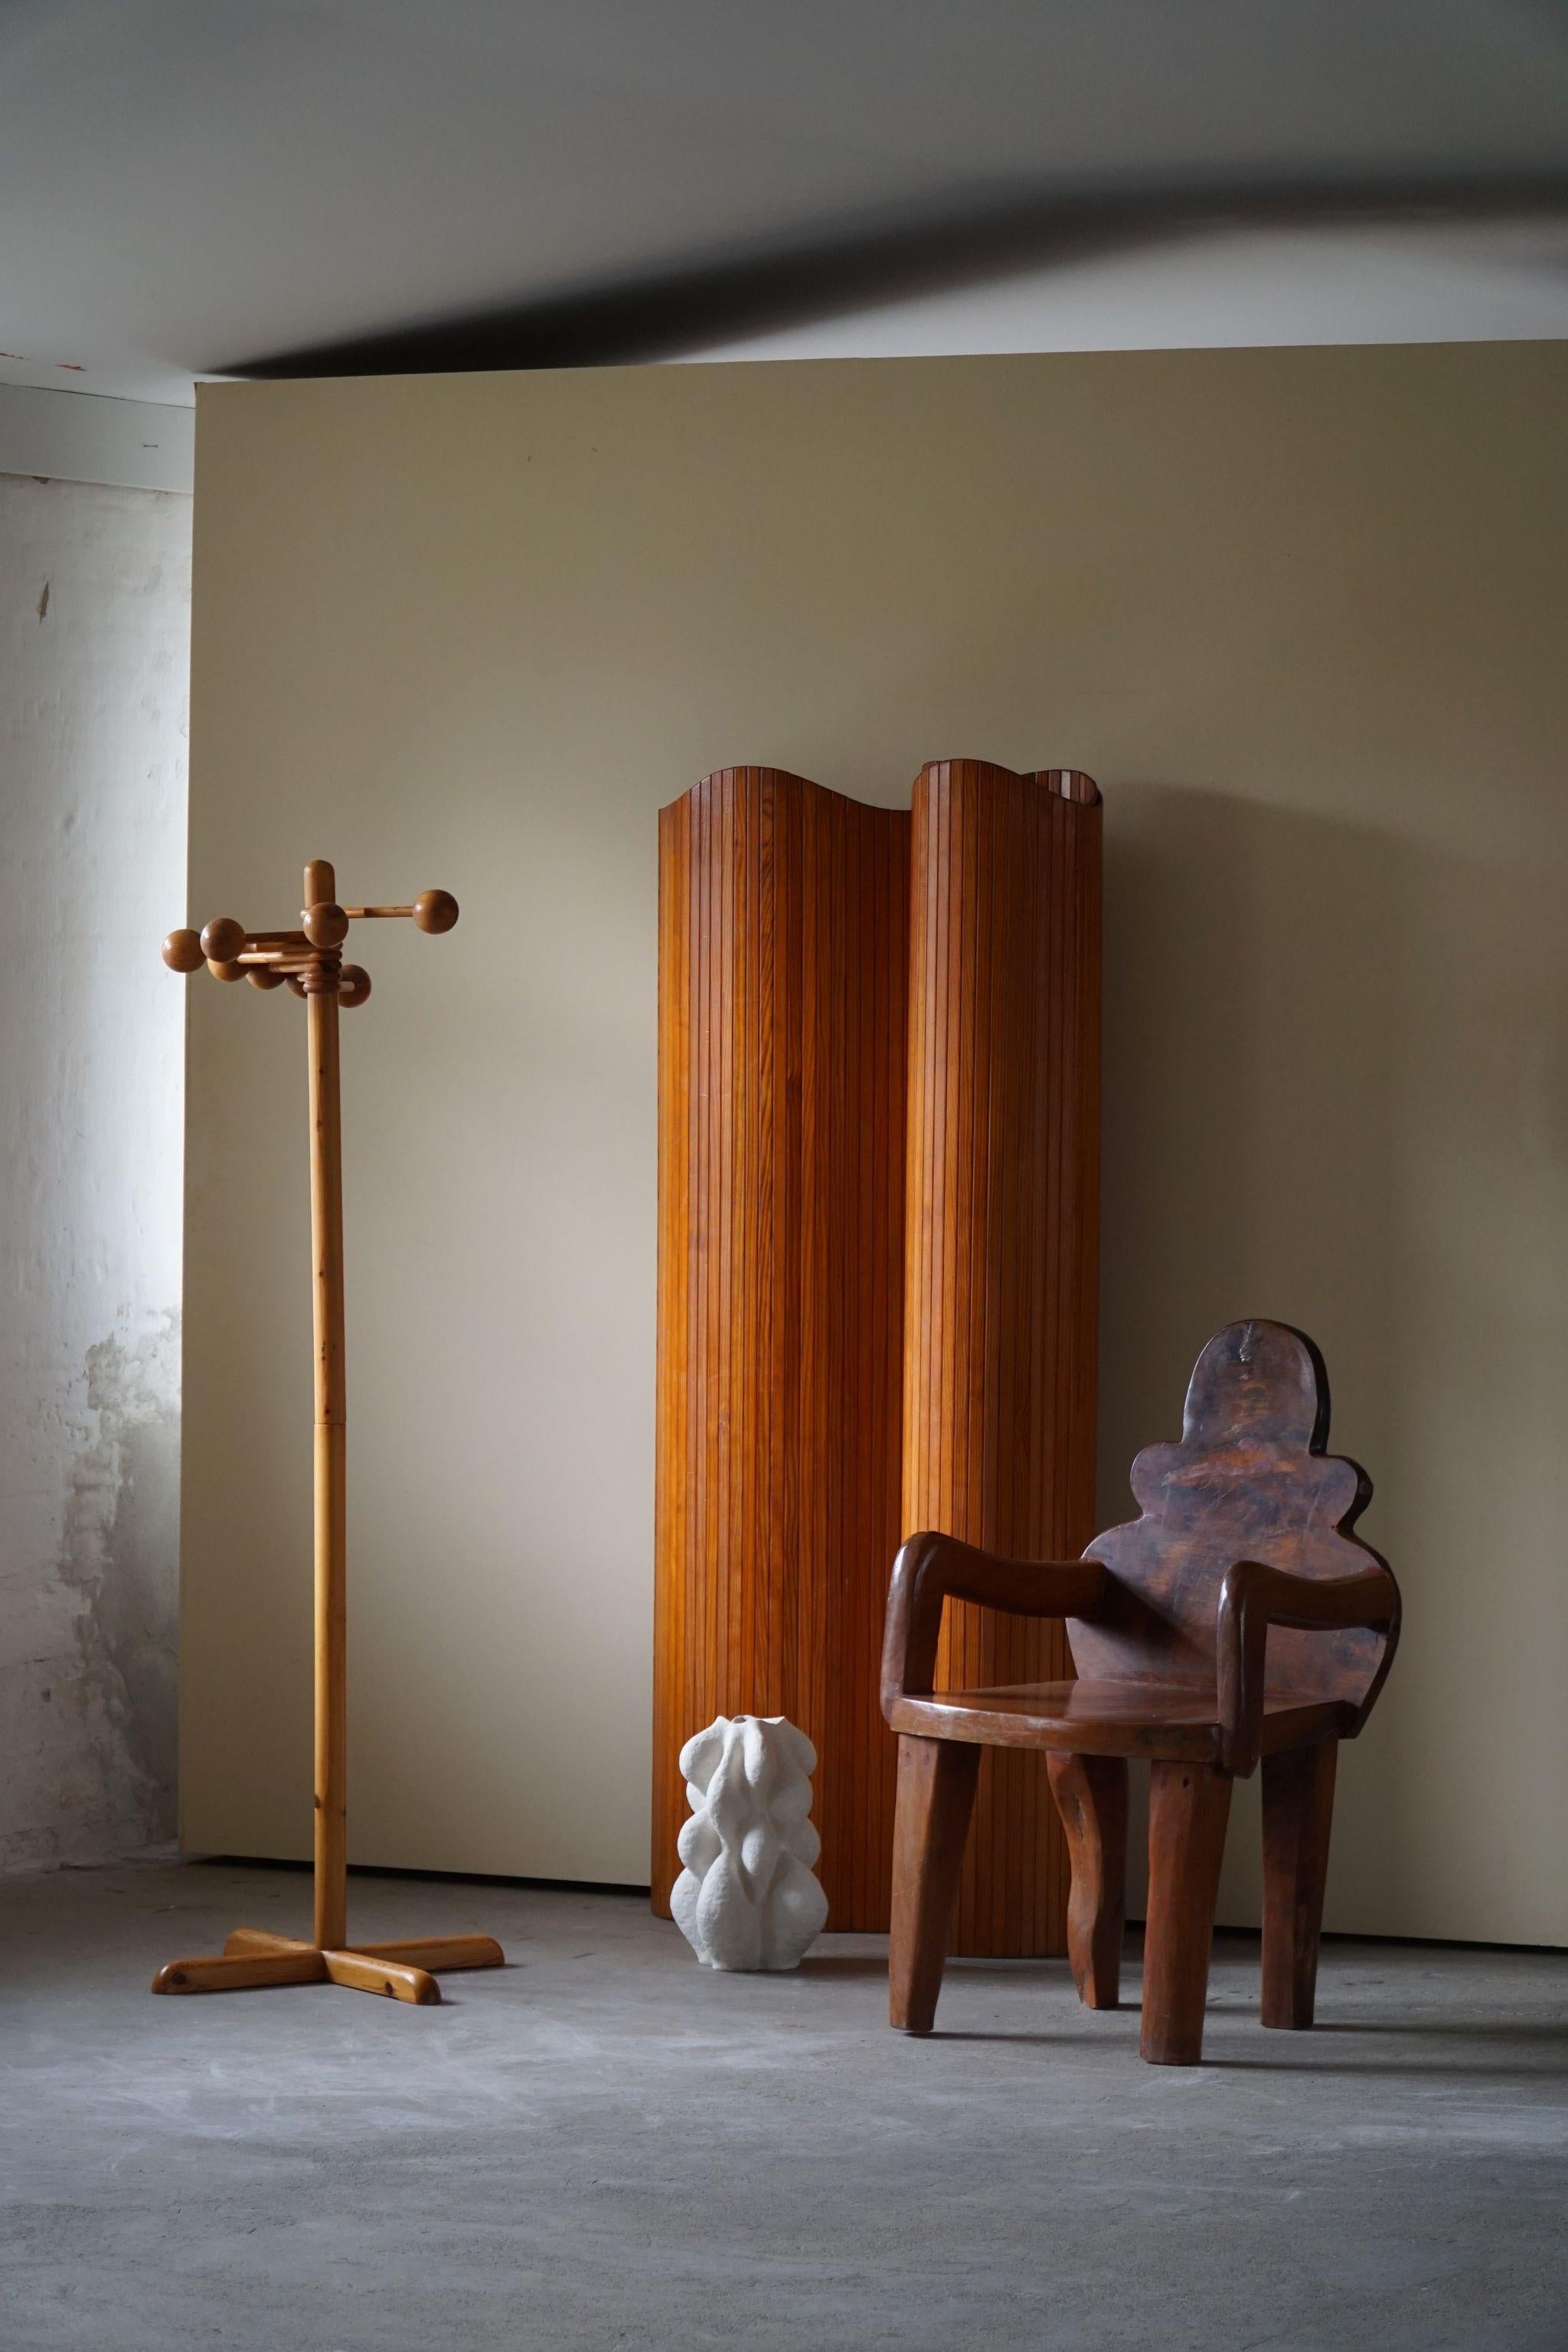 Une fantastique chaise wabi sabi unique sculptée dans une grande pièce de bois. Traces d'usure. Fabriqué à la main par un ébéniste suédois au milieu du 20e siècle.
Une forme organique intrigante et une figure décorative qui s'harmonise avec de